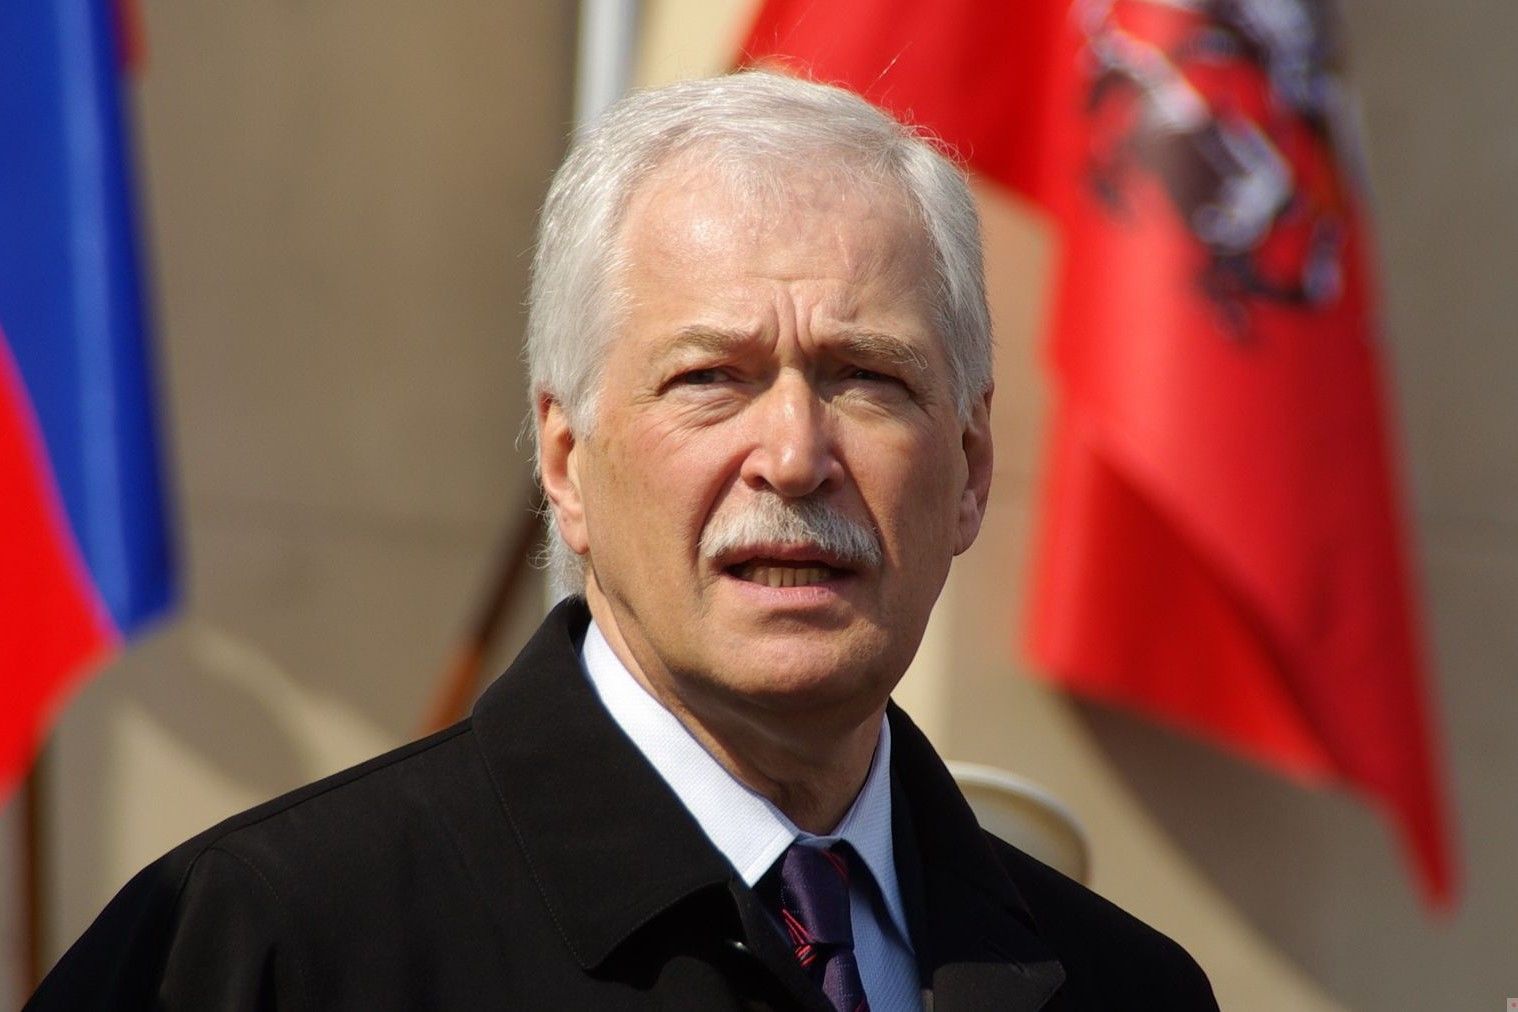 Грызлов, отвечавший за украинское направление, назначен послом РФ в Беларуси